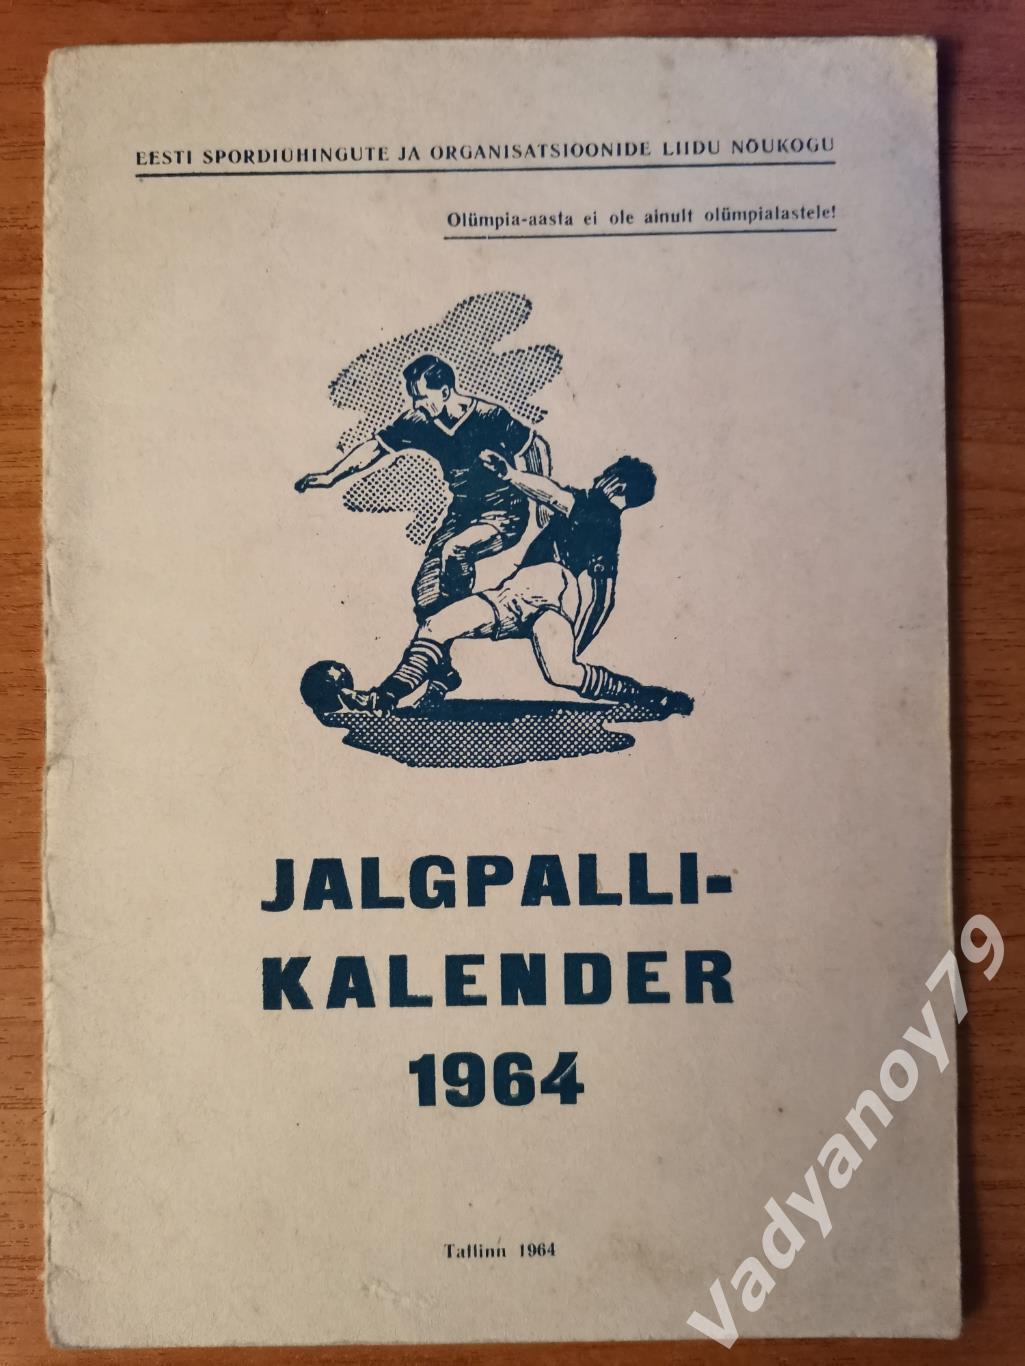 Футбольный календарь. 1964 Таллин/Таллинн (ЭССР/Эстония/на эстонском языке)